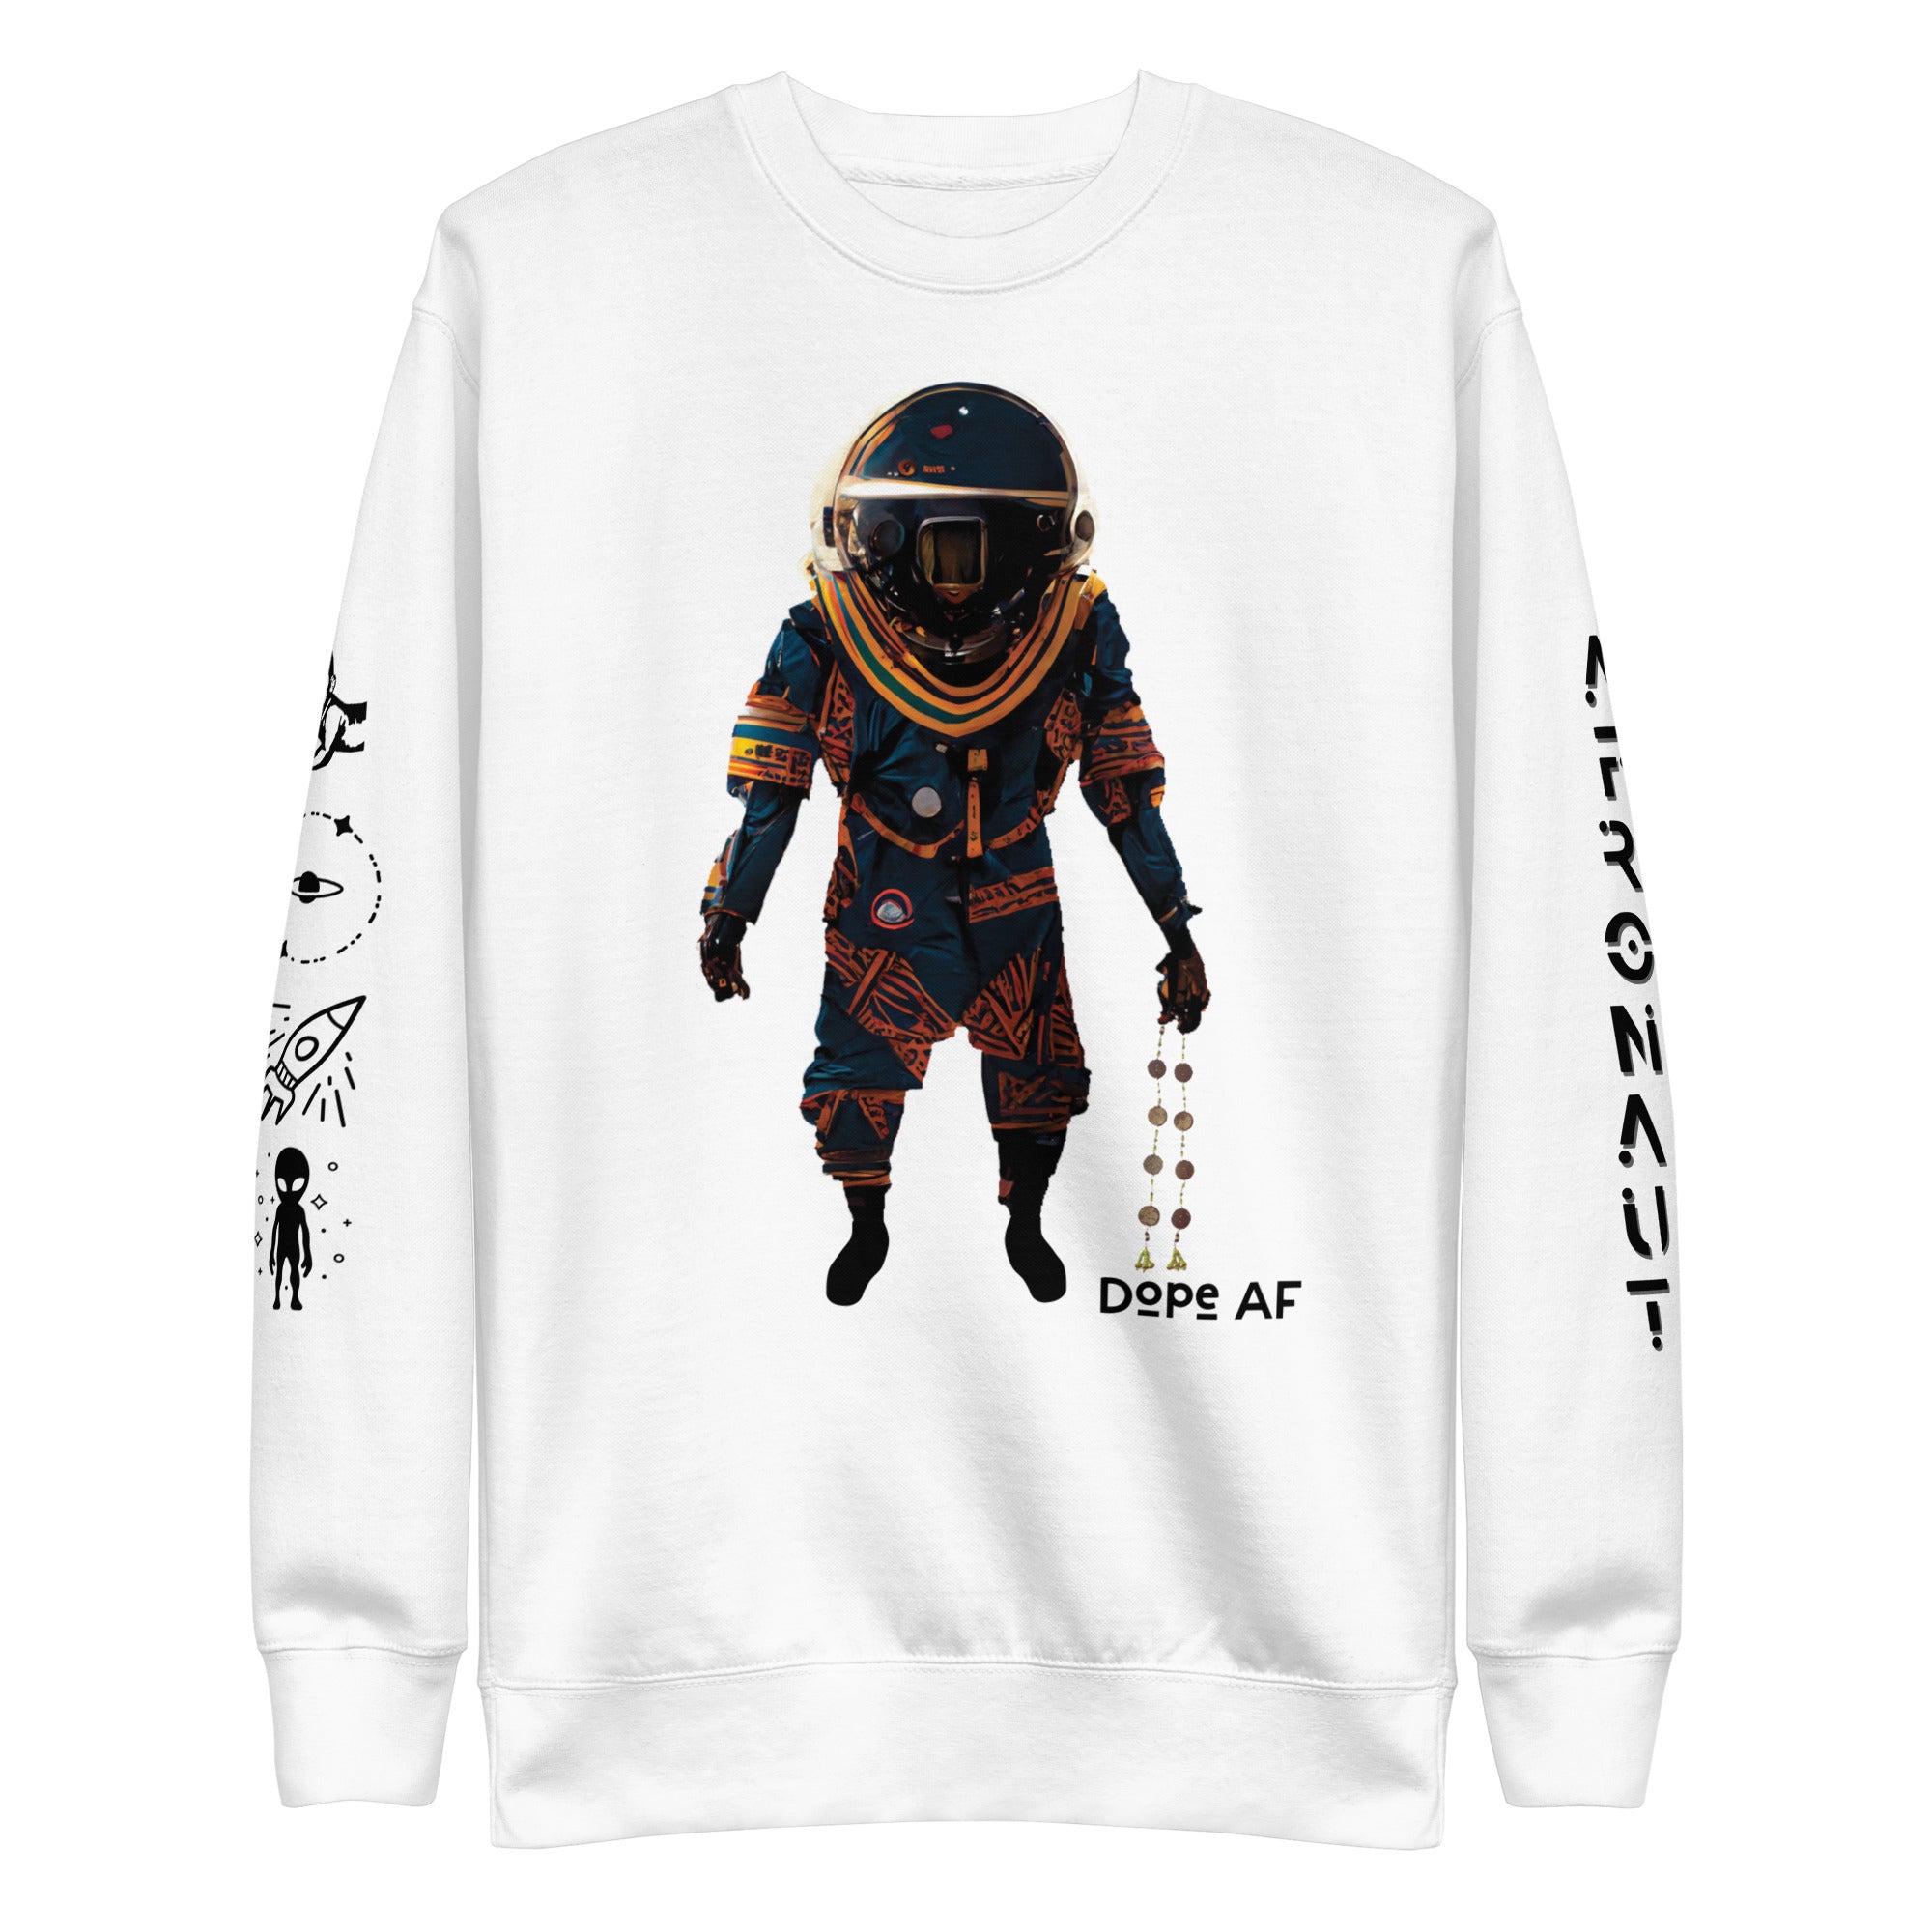 Afronaut Sweatshirt